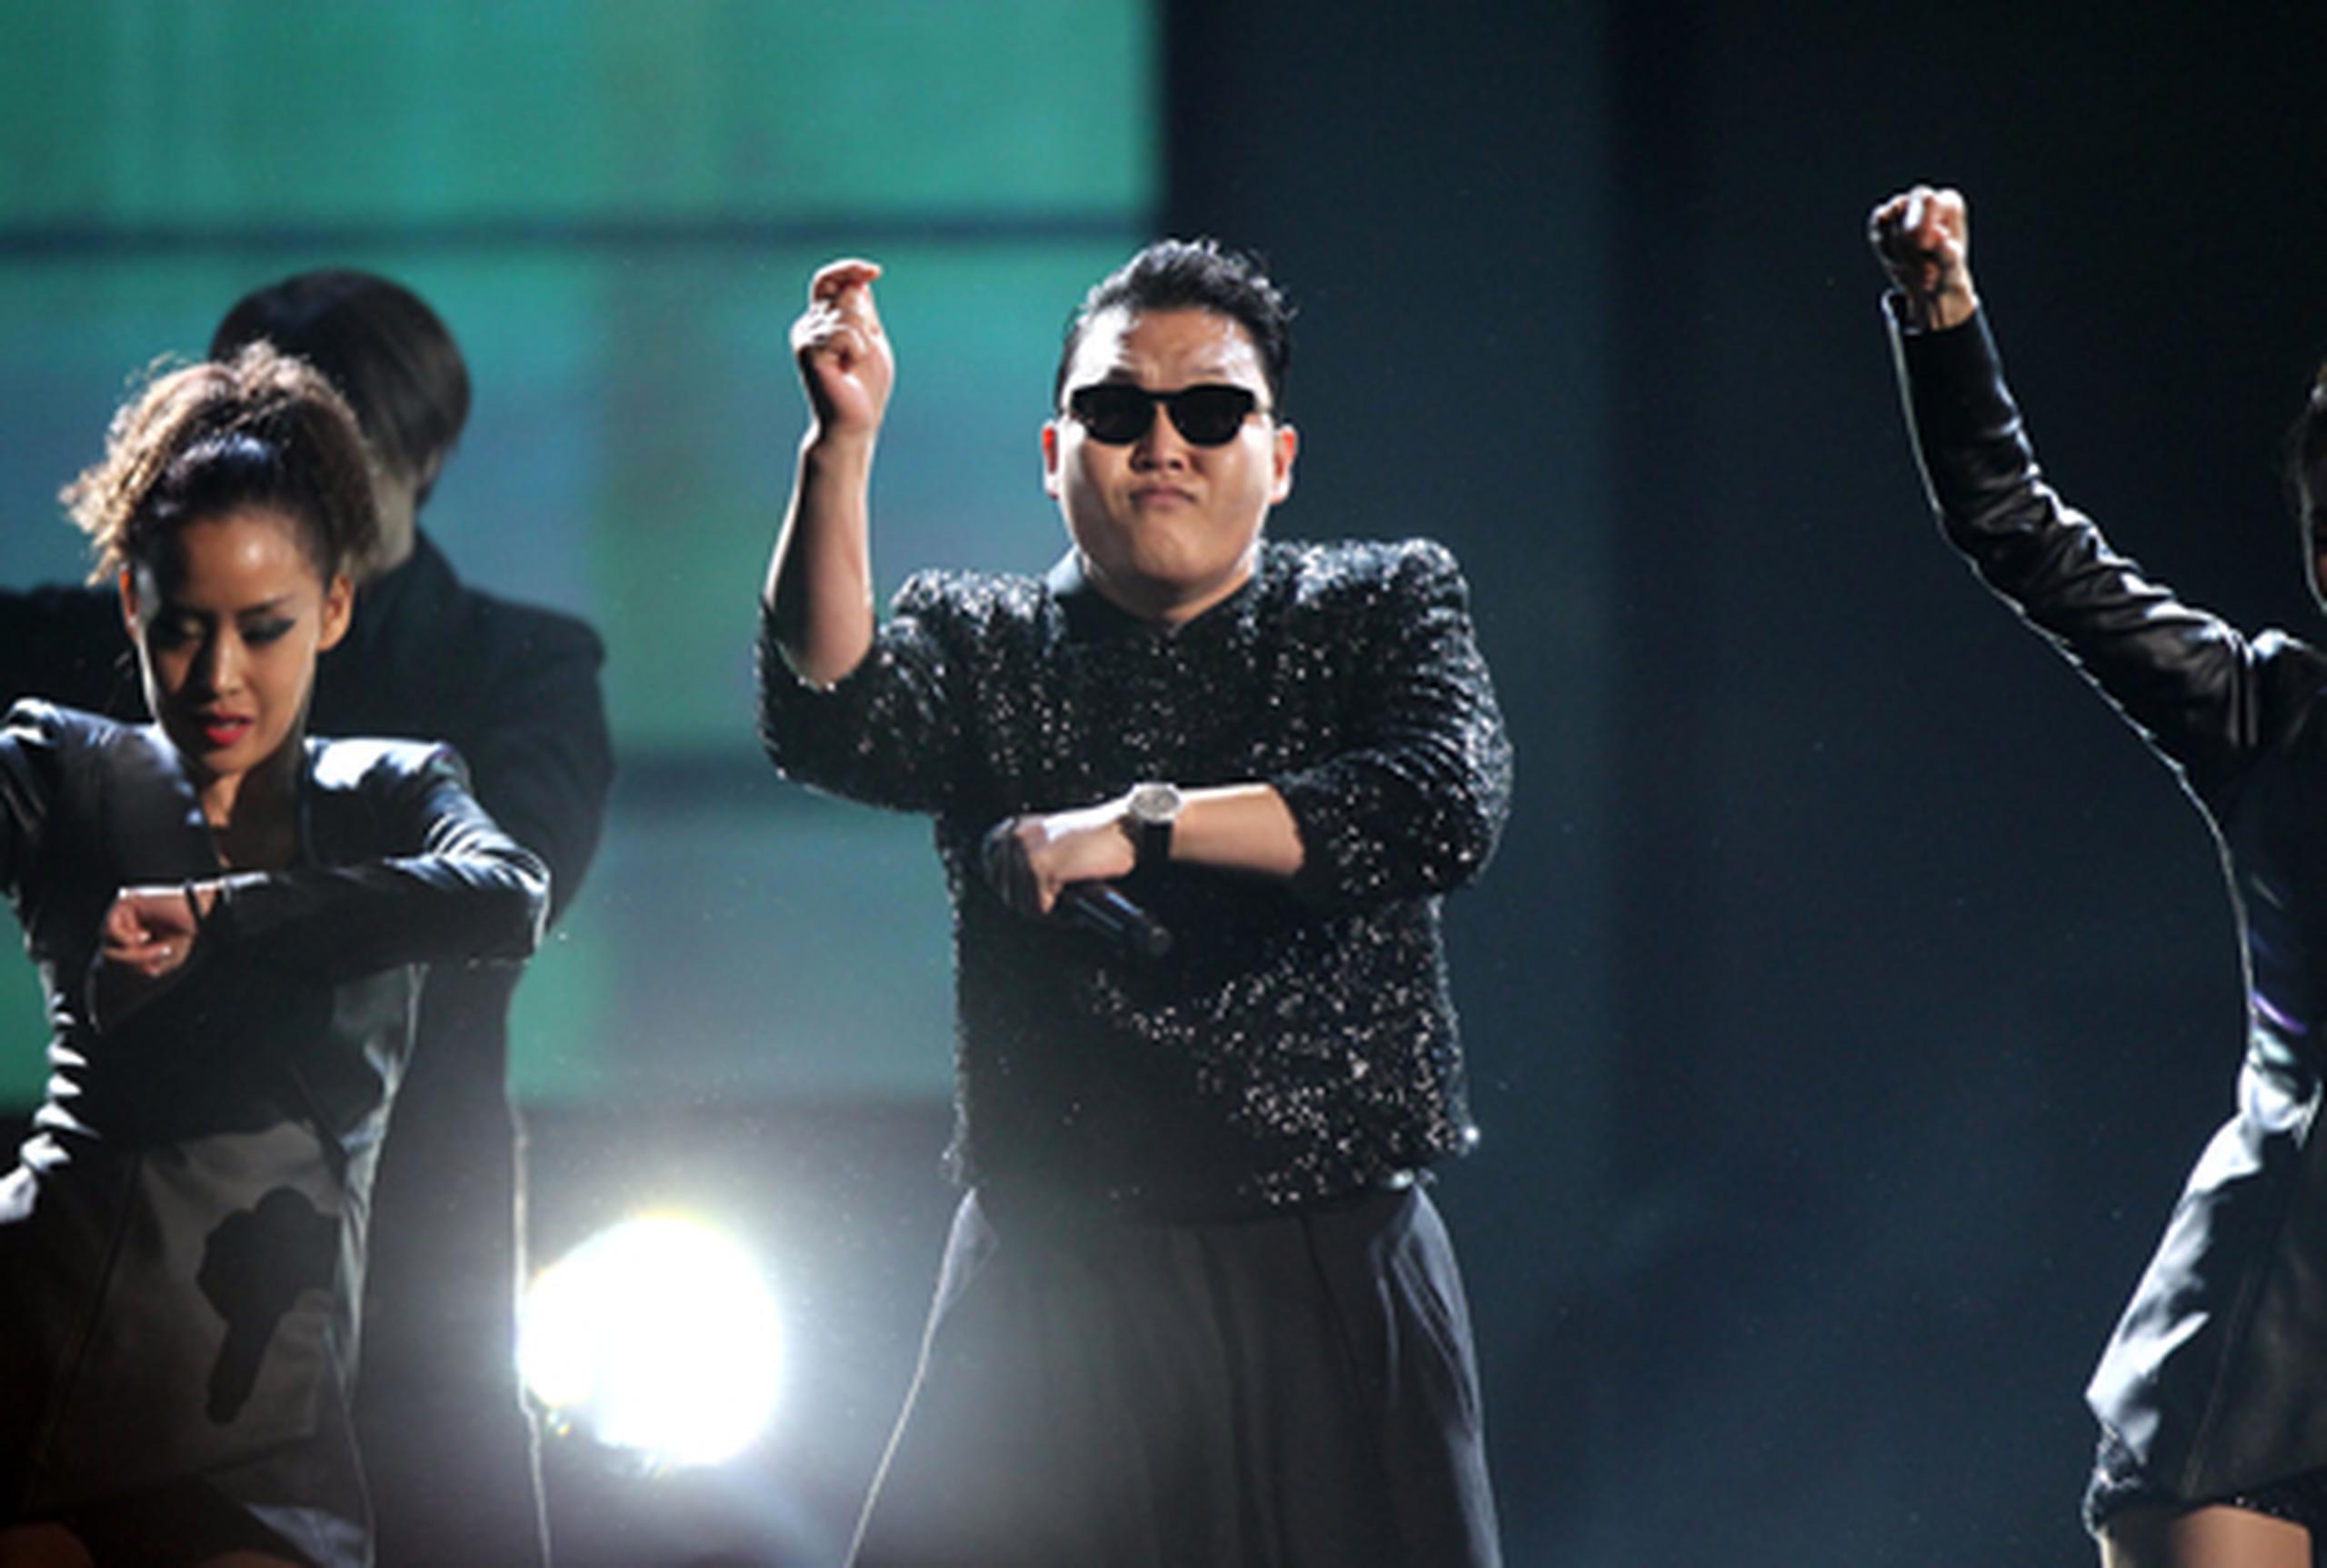 La estrella del pop coreano PSY ha hecho del Gangnam Style uno de los bailes más populares de los últimos días. (Archivo)